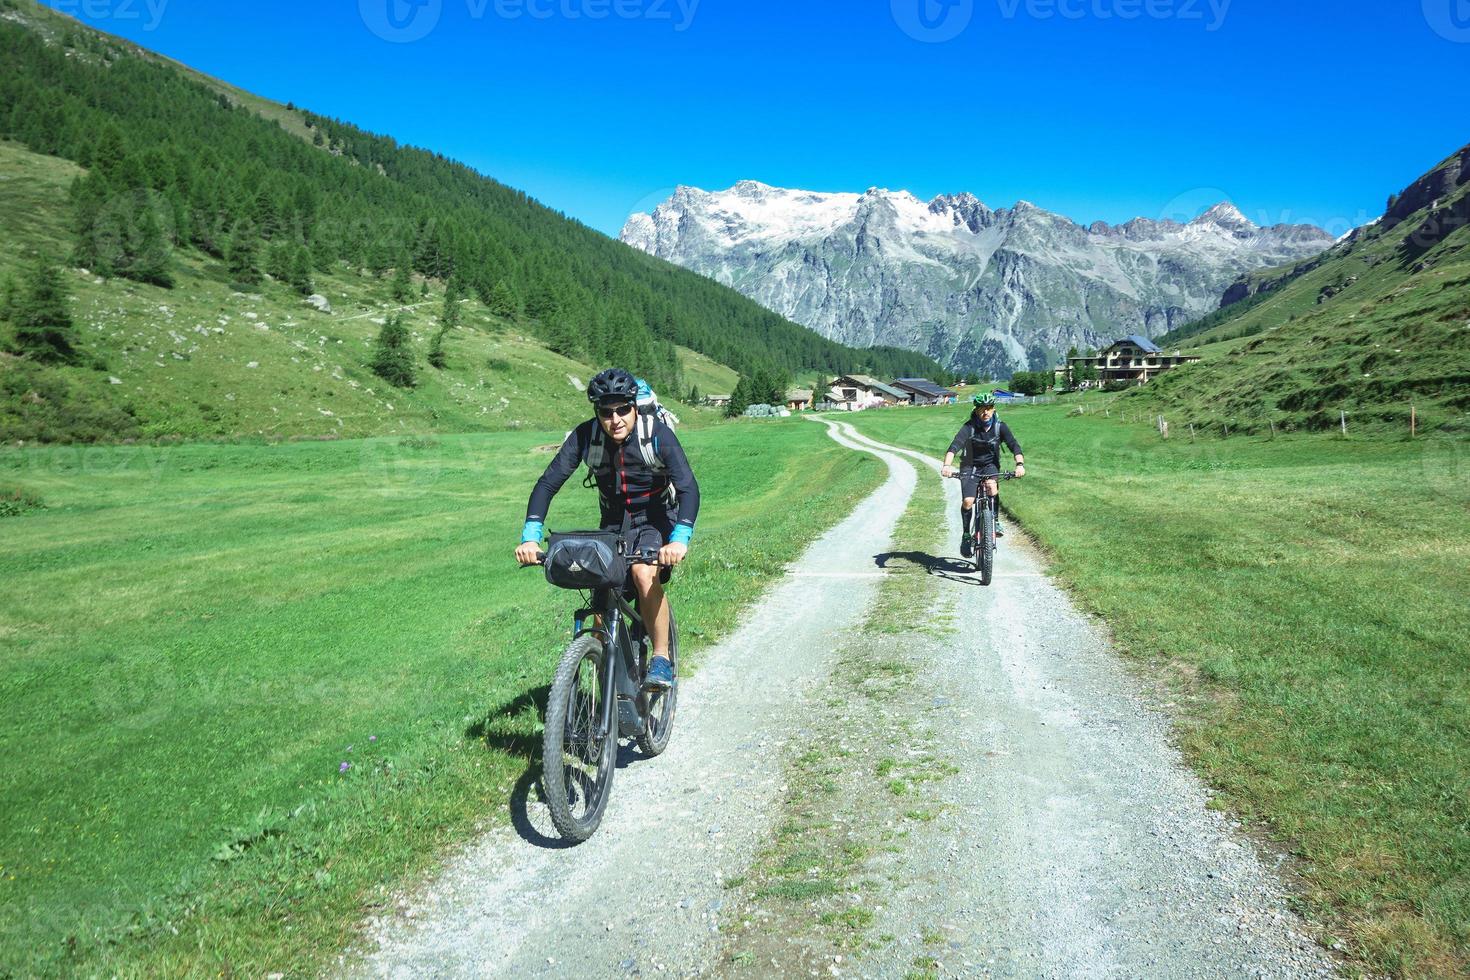 paar vrienden fietsers tijdens een ritje op de bergweg foto